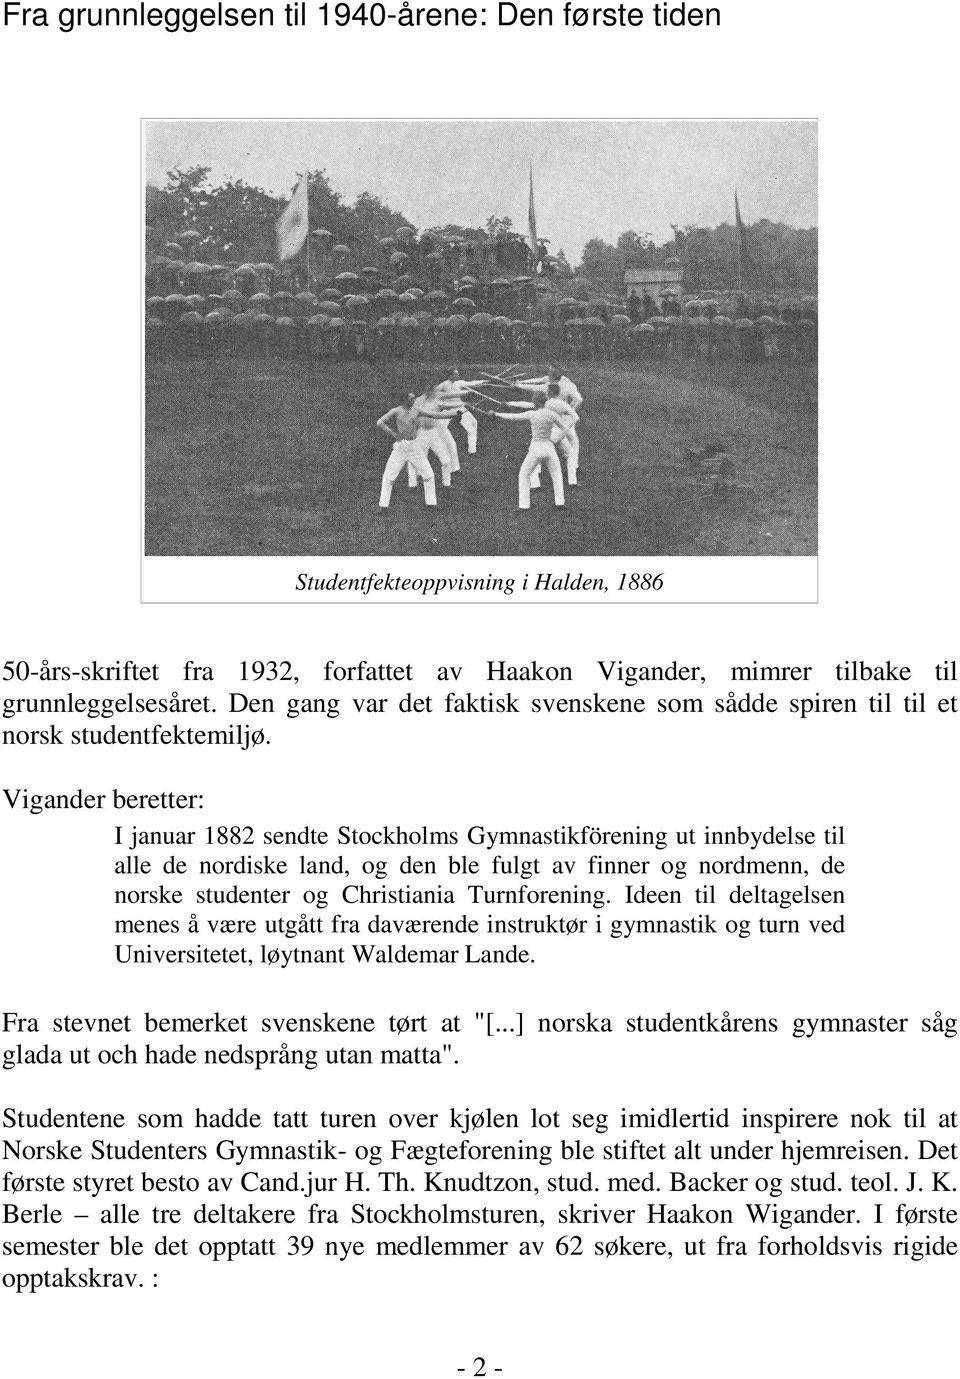 Vigander beretter: I januar 1882 sendte Stockholms Gymnastikförening ut innbydelse til alle de nordiske land, og den ble fulgt av finner og nordmenn, de norske studenter og Christiania Turnforening.